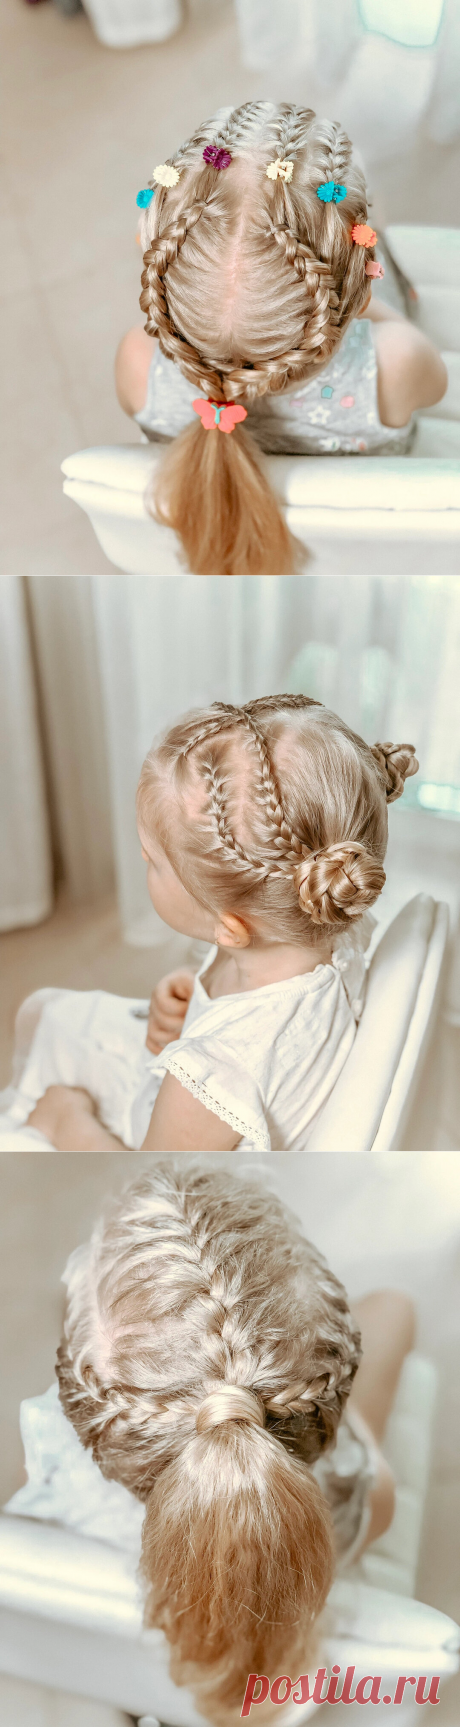 Детские прически на длинные волосы | LittleMods | Яндекс Дзен